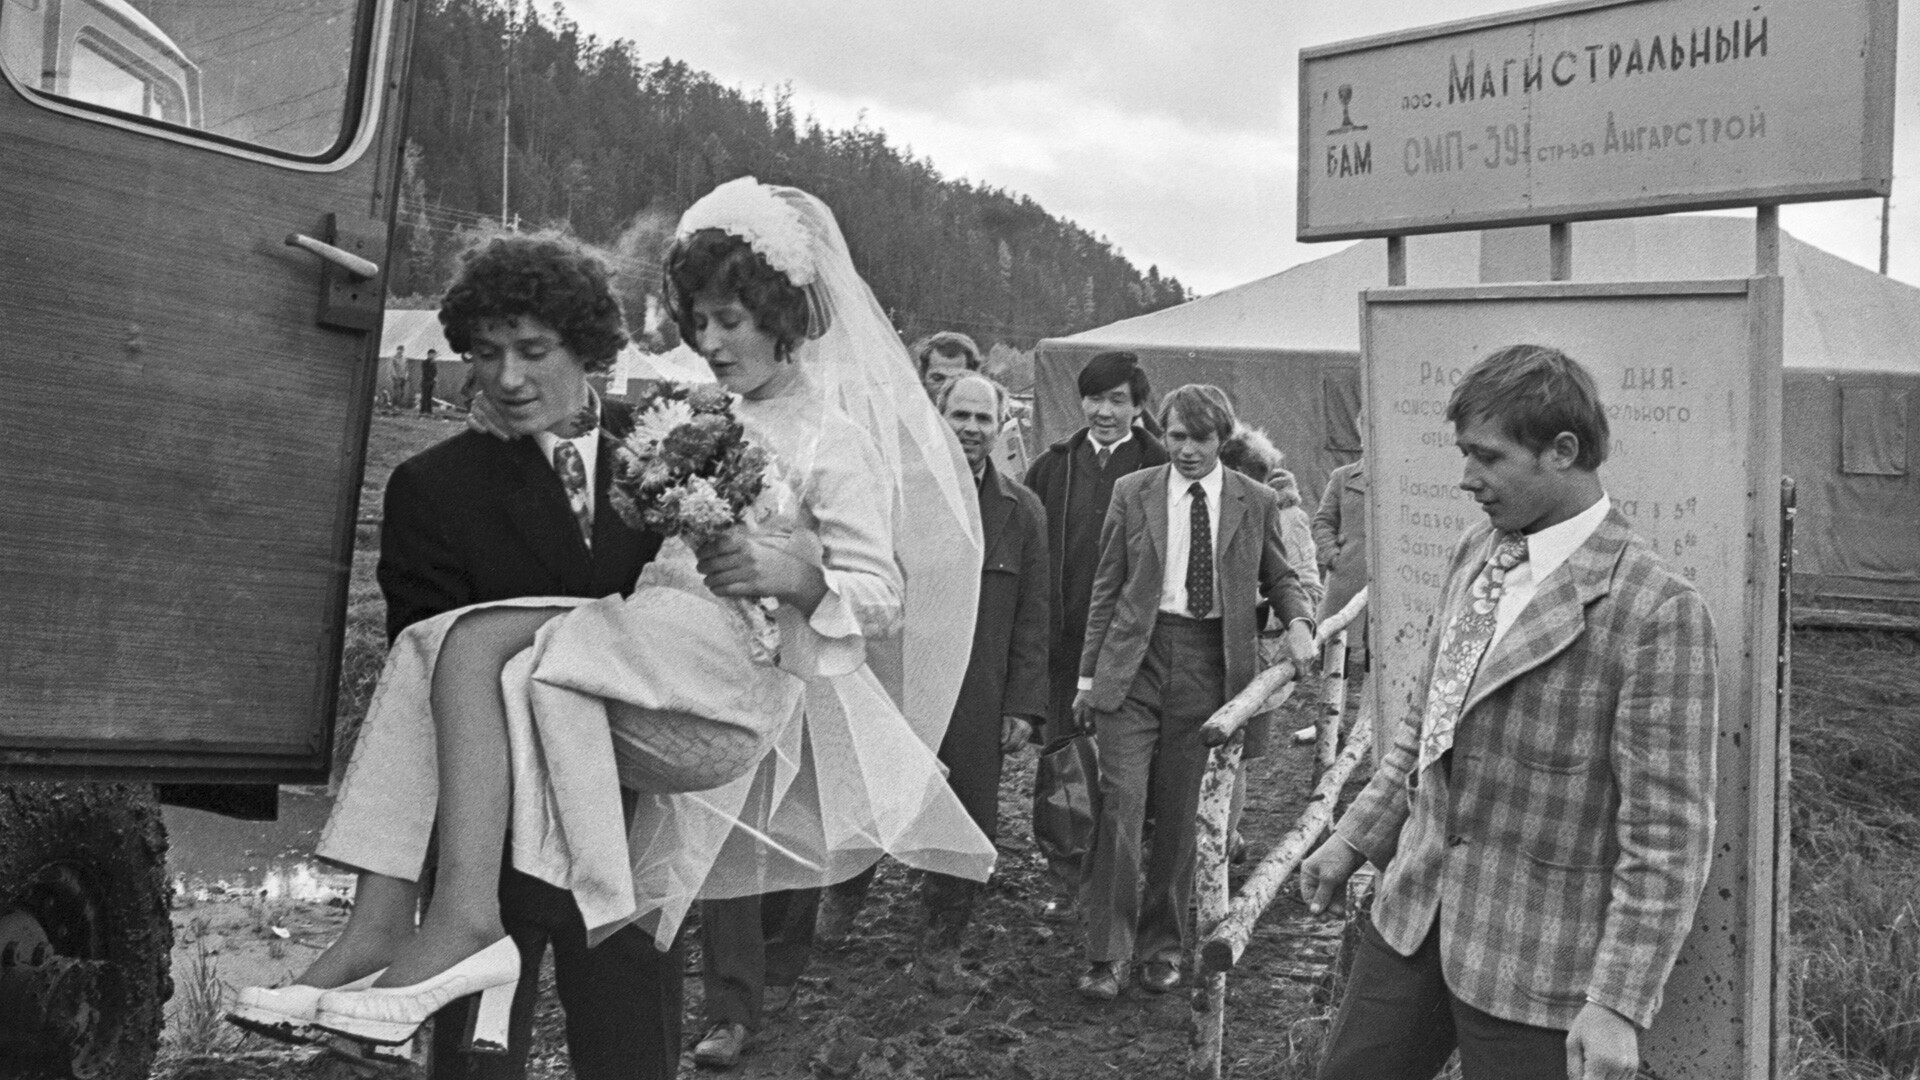 Mariage dans un village des constructeurs de la Magistrale Baïkal-Amour